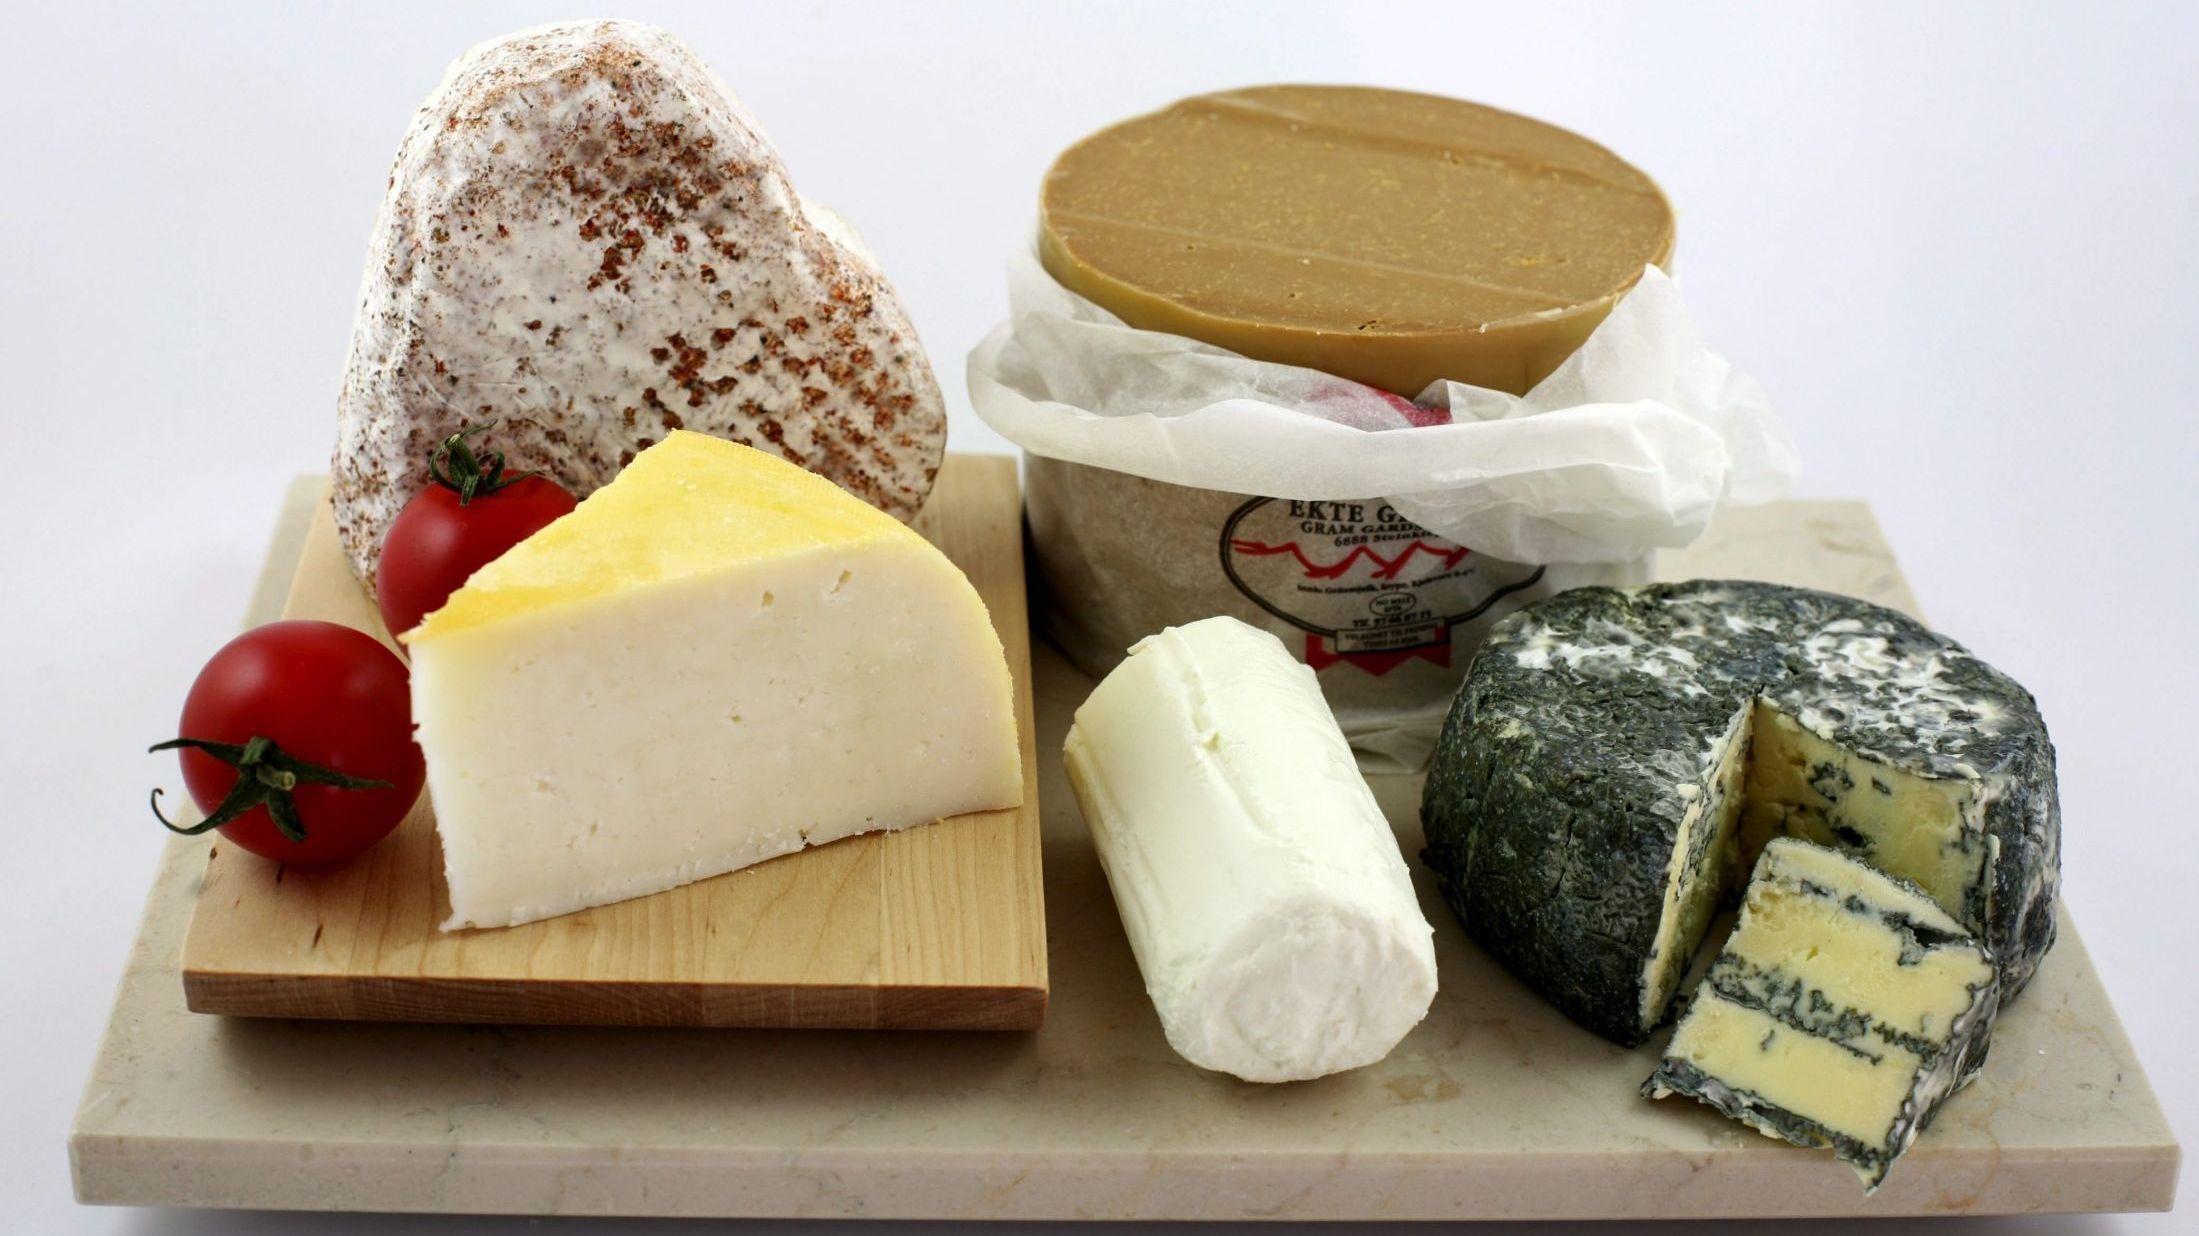 OST TIL FOLKET: Norge er i ferd med å bli en ostenasjon; ost er trendy og norsk ost er mer populær enn noensinne. Foto: Hanne Buxrud